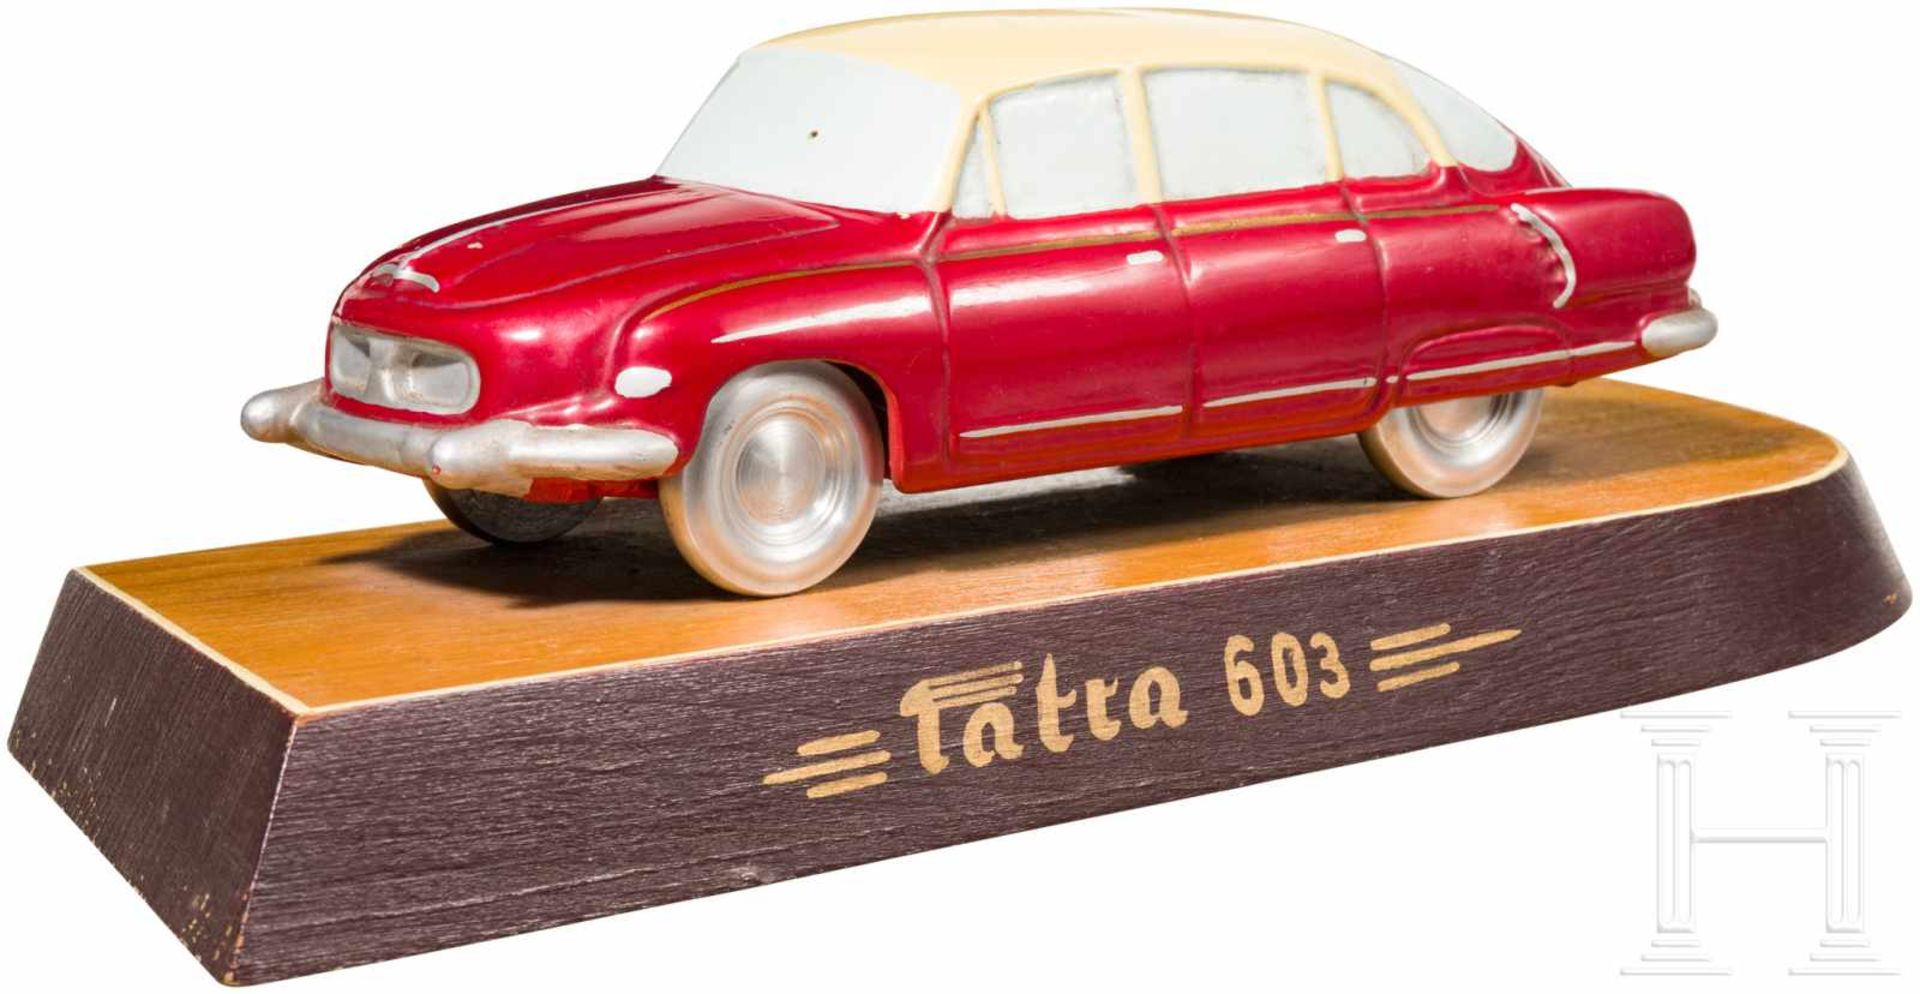 Schreibtischmodell eines Tatra 603-2, 1960er JahreGussmetall mit Farbfassung (minimale Abplatzer)